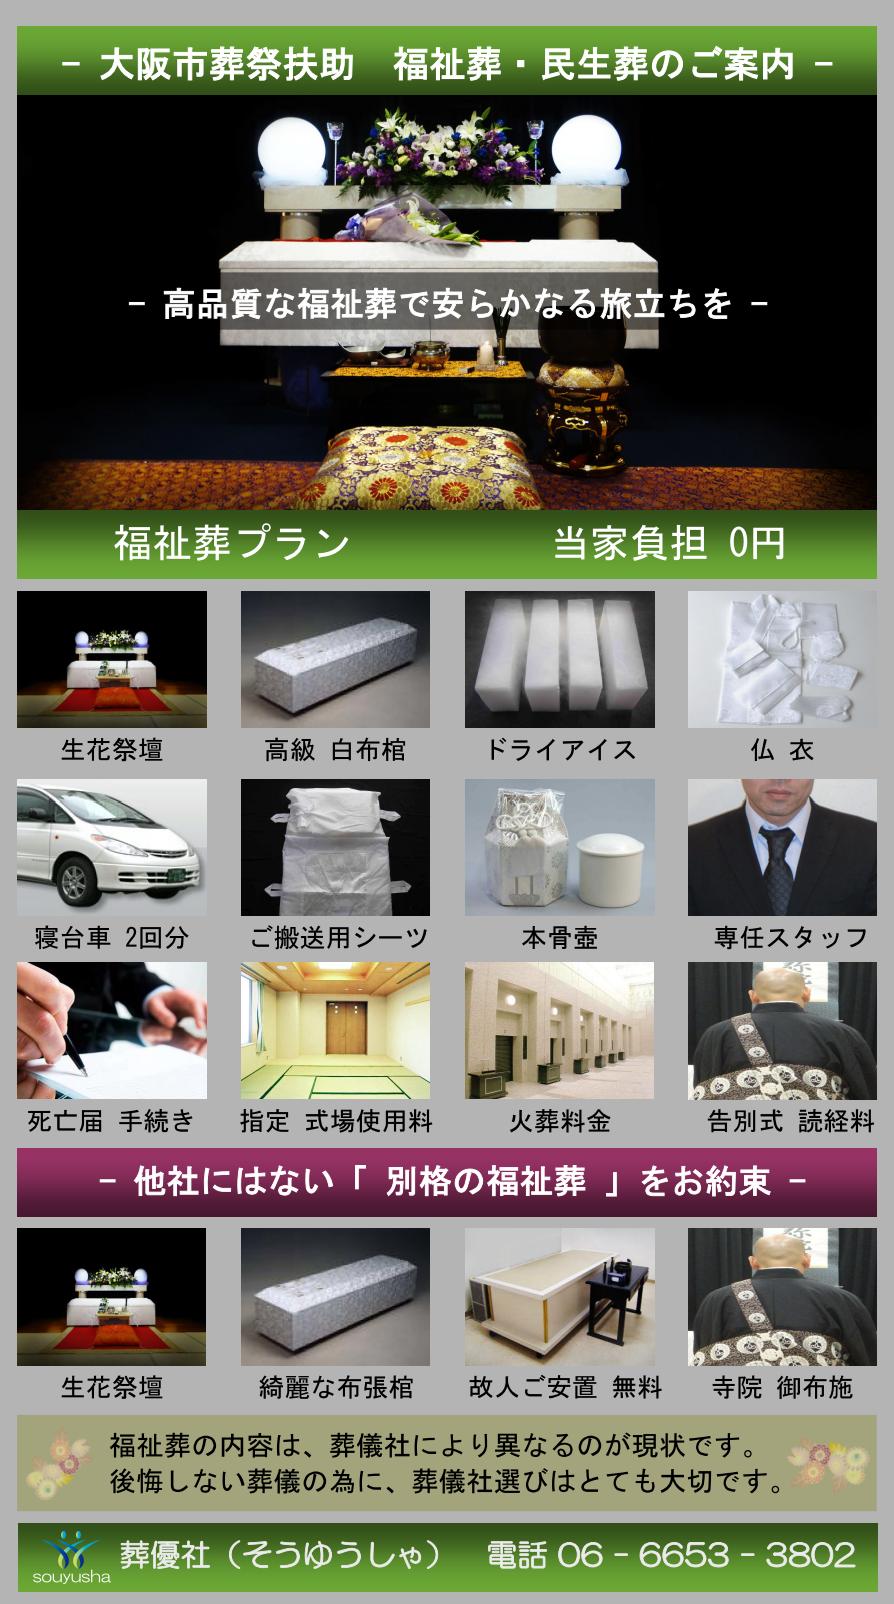 大阪市 浪速区での福祉葬、生活保護者のお葬式のご案内